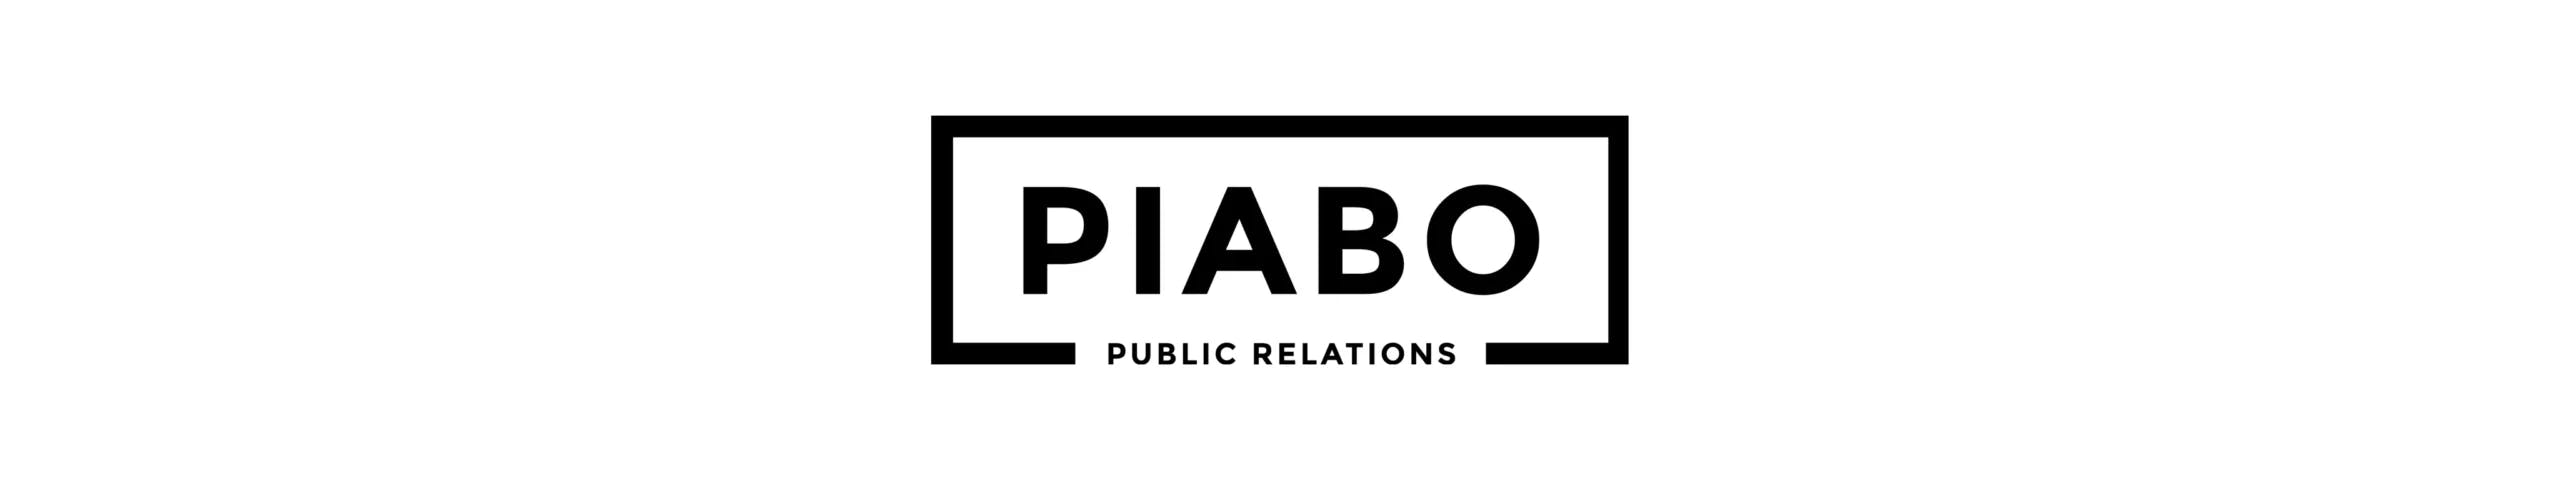 Interview auf Speed mit “PIABO PR”